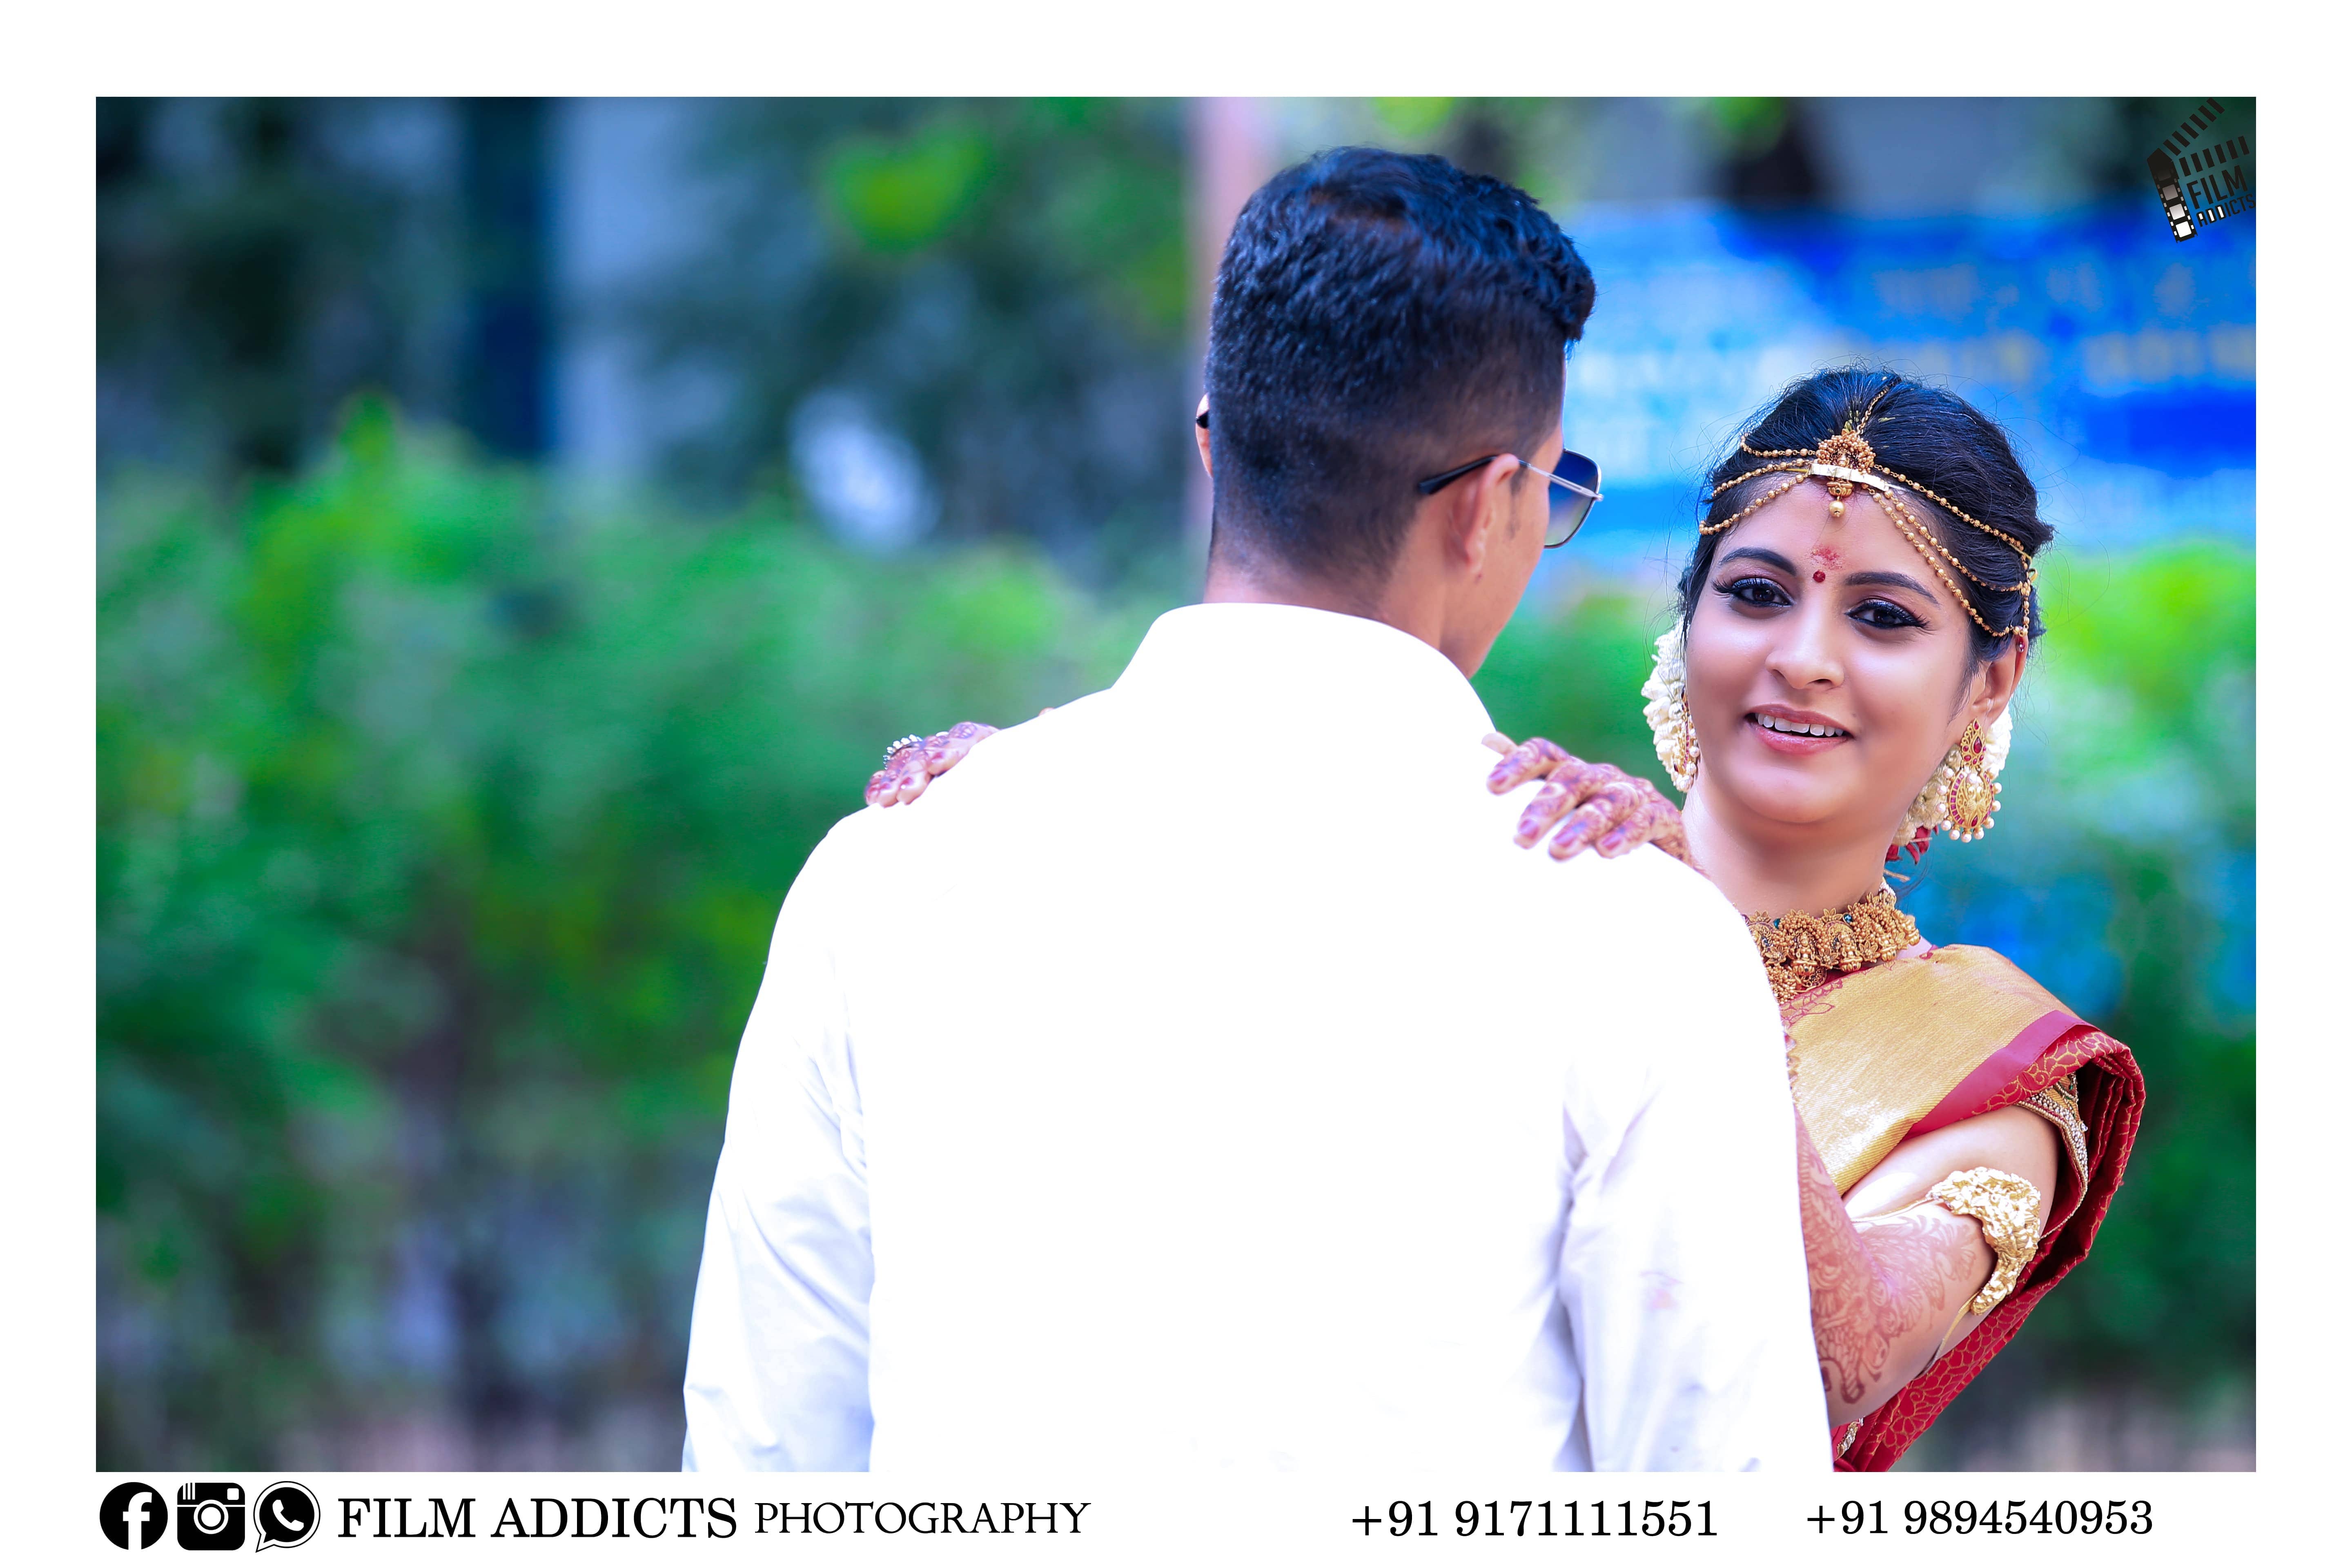 Dhanush photography - Wedding Photographer in Pallikaranai, Chennai